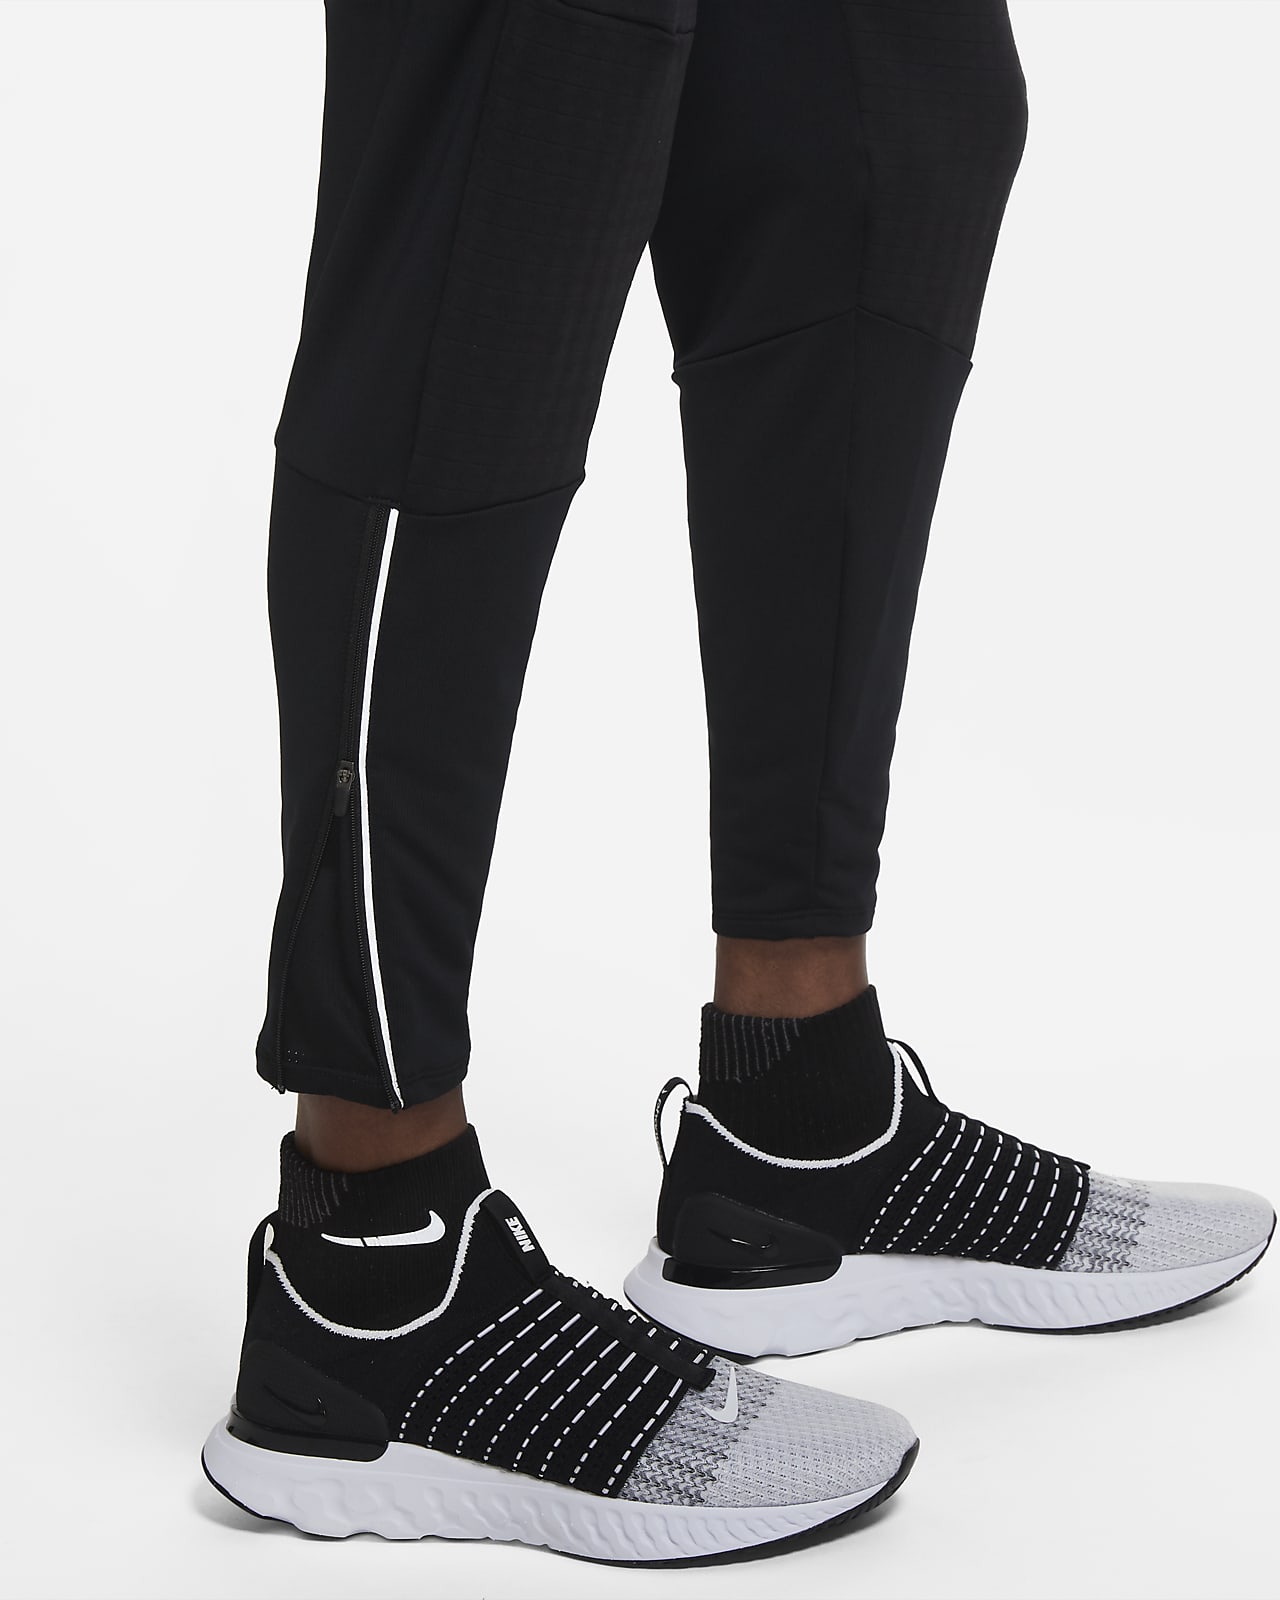 Nike Phenom Elite Wild Run 7/8 Woven Running Pants